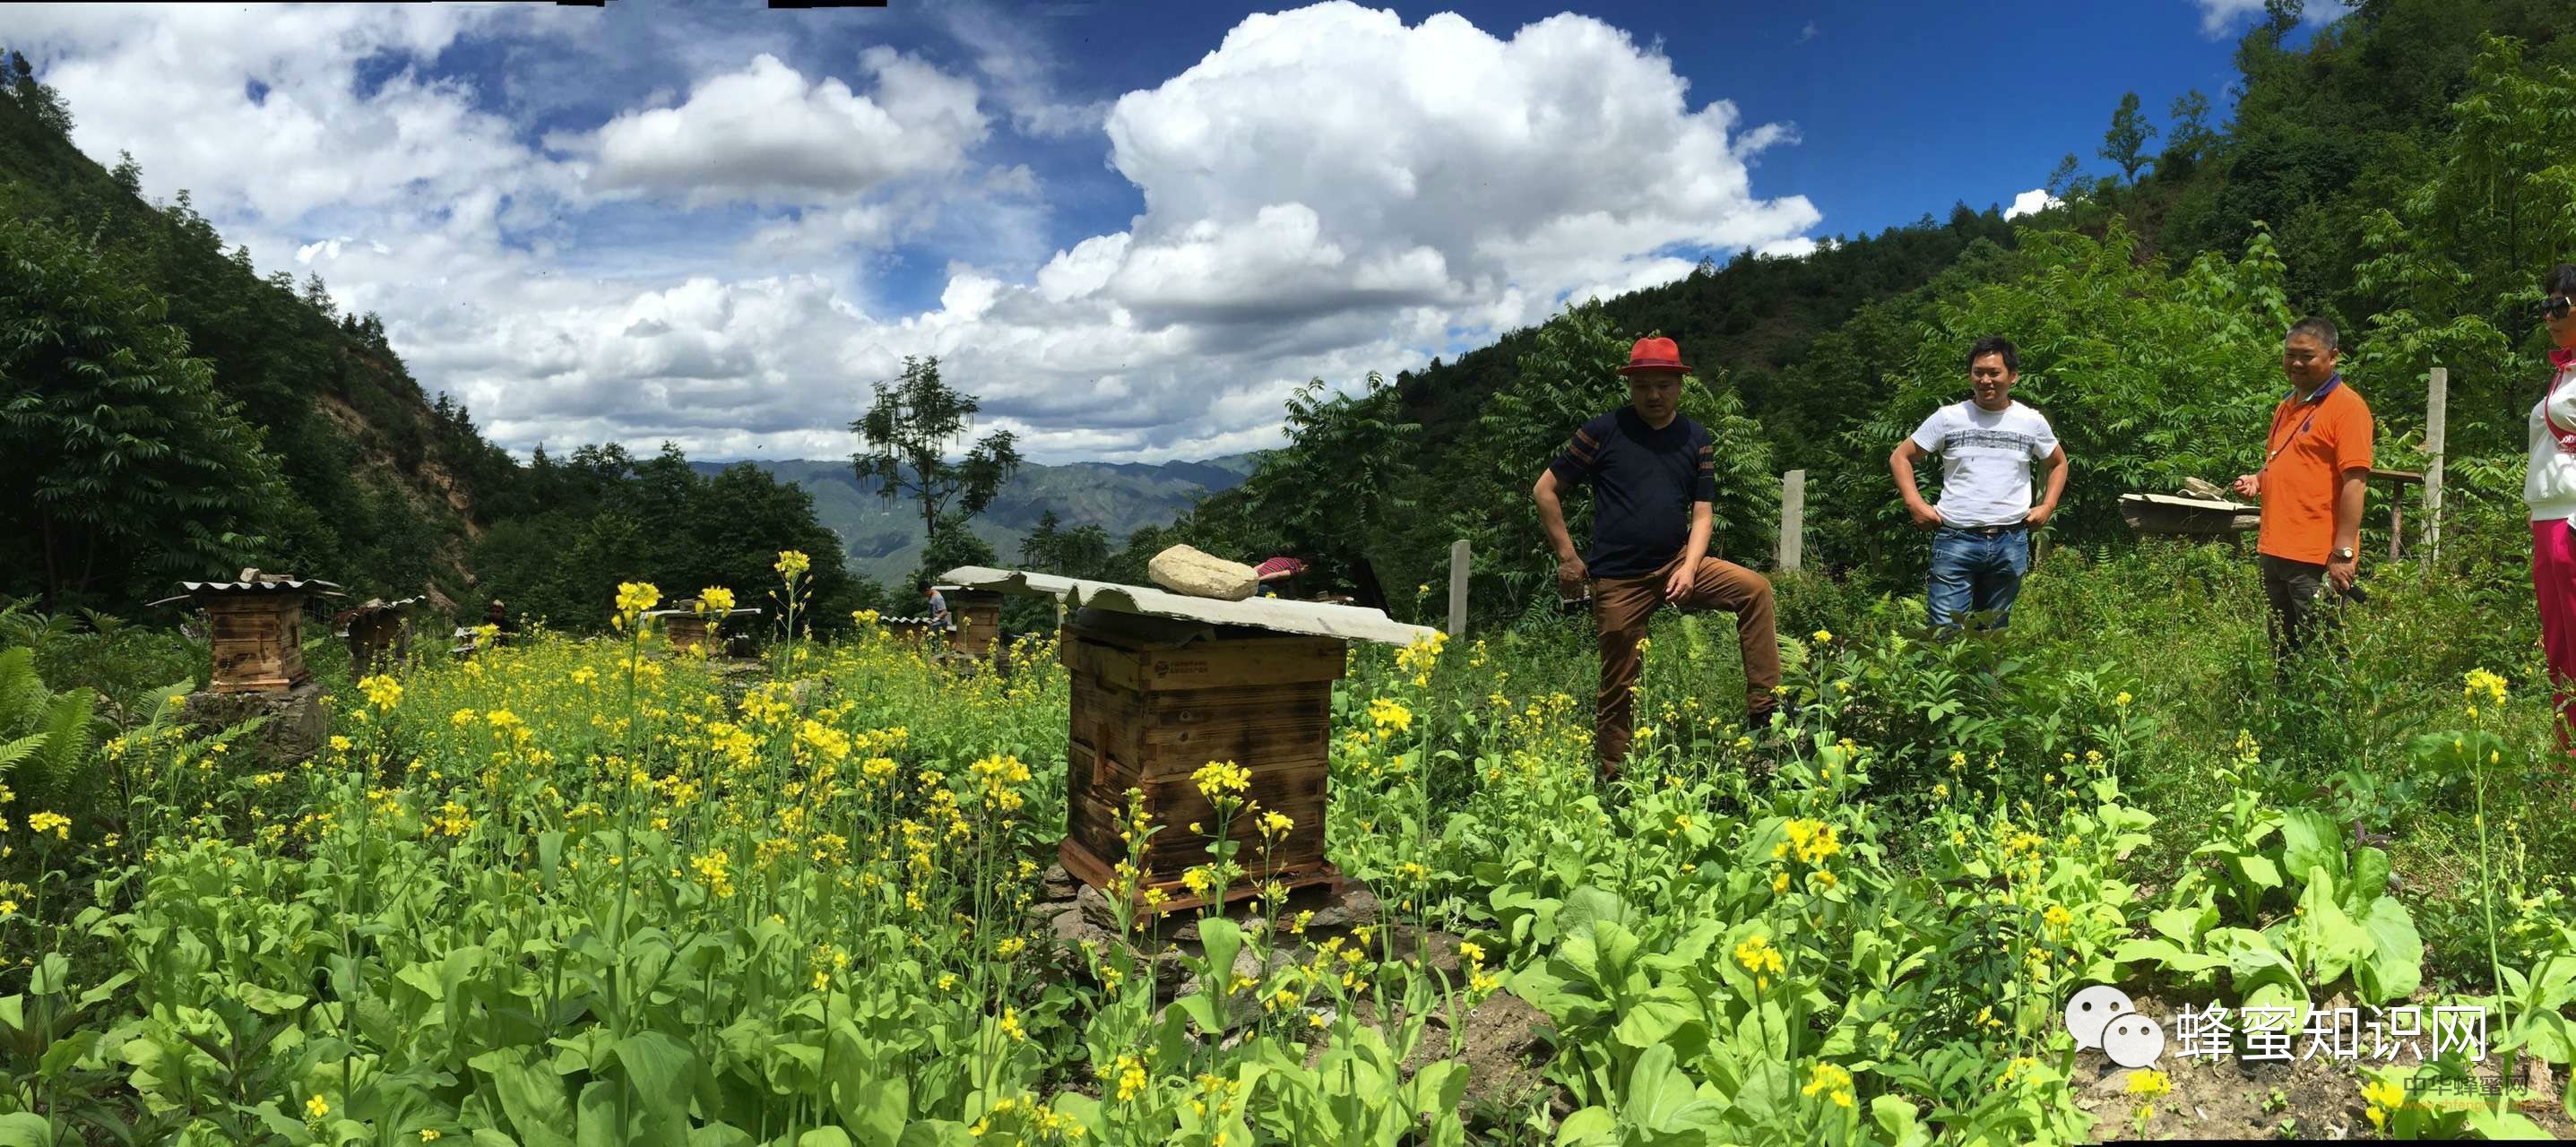 有一个自己的蜜蜂园，真幸福！！！